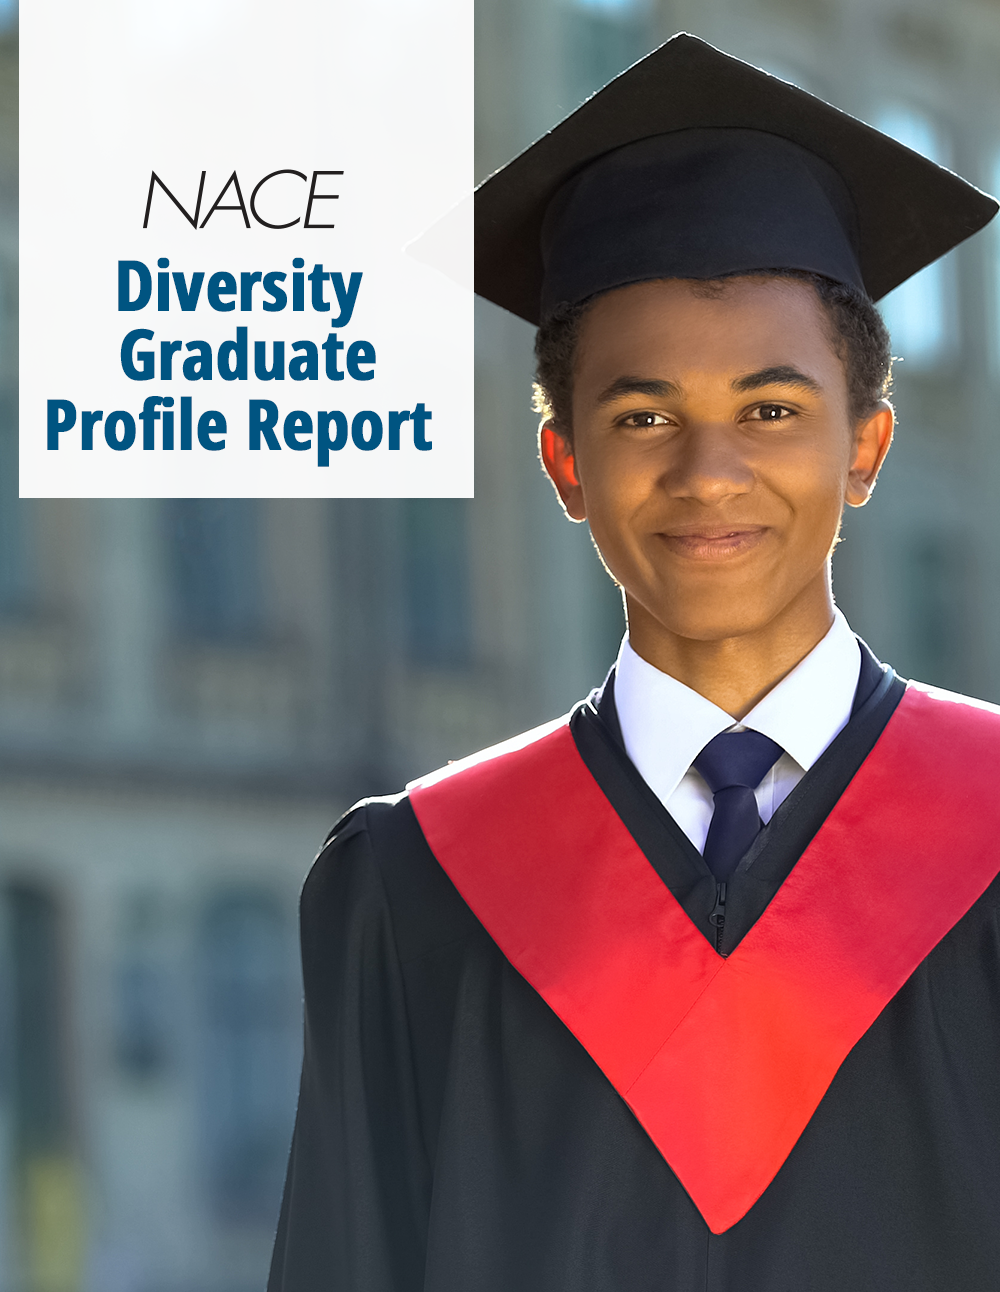 NACE Diversity Graduate Profile Report: HBCUs